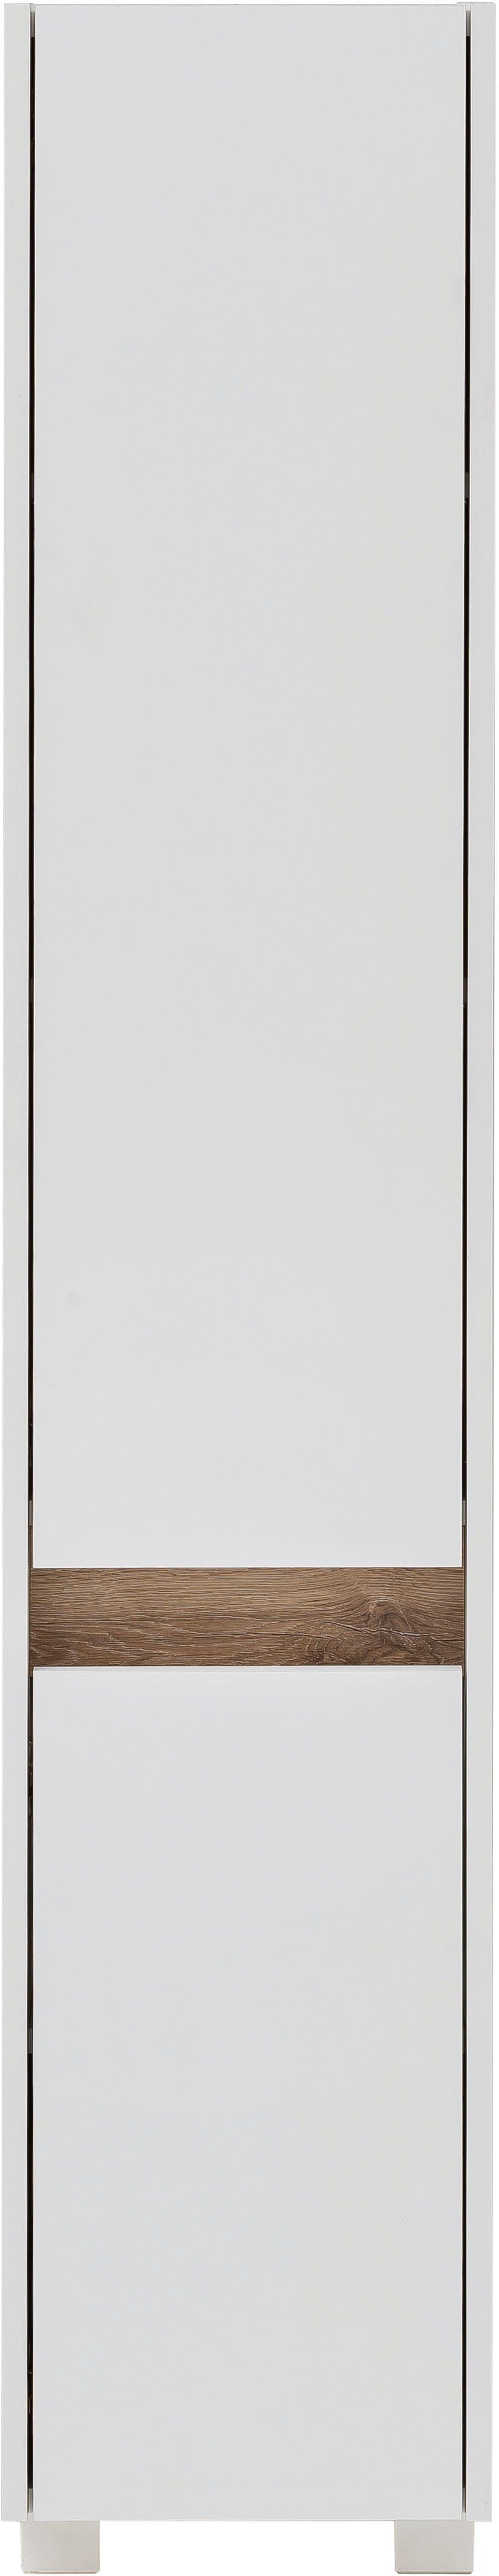 Schildmeyer Hochschrank Cosmo Höhe weiß | 164,5 cm, im Badezimmerschrank, Blende weiß modernen Wildeiche-Look